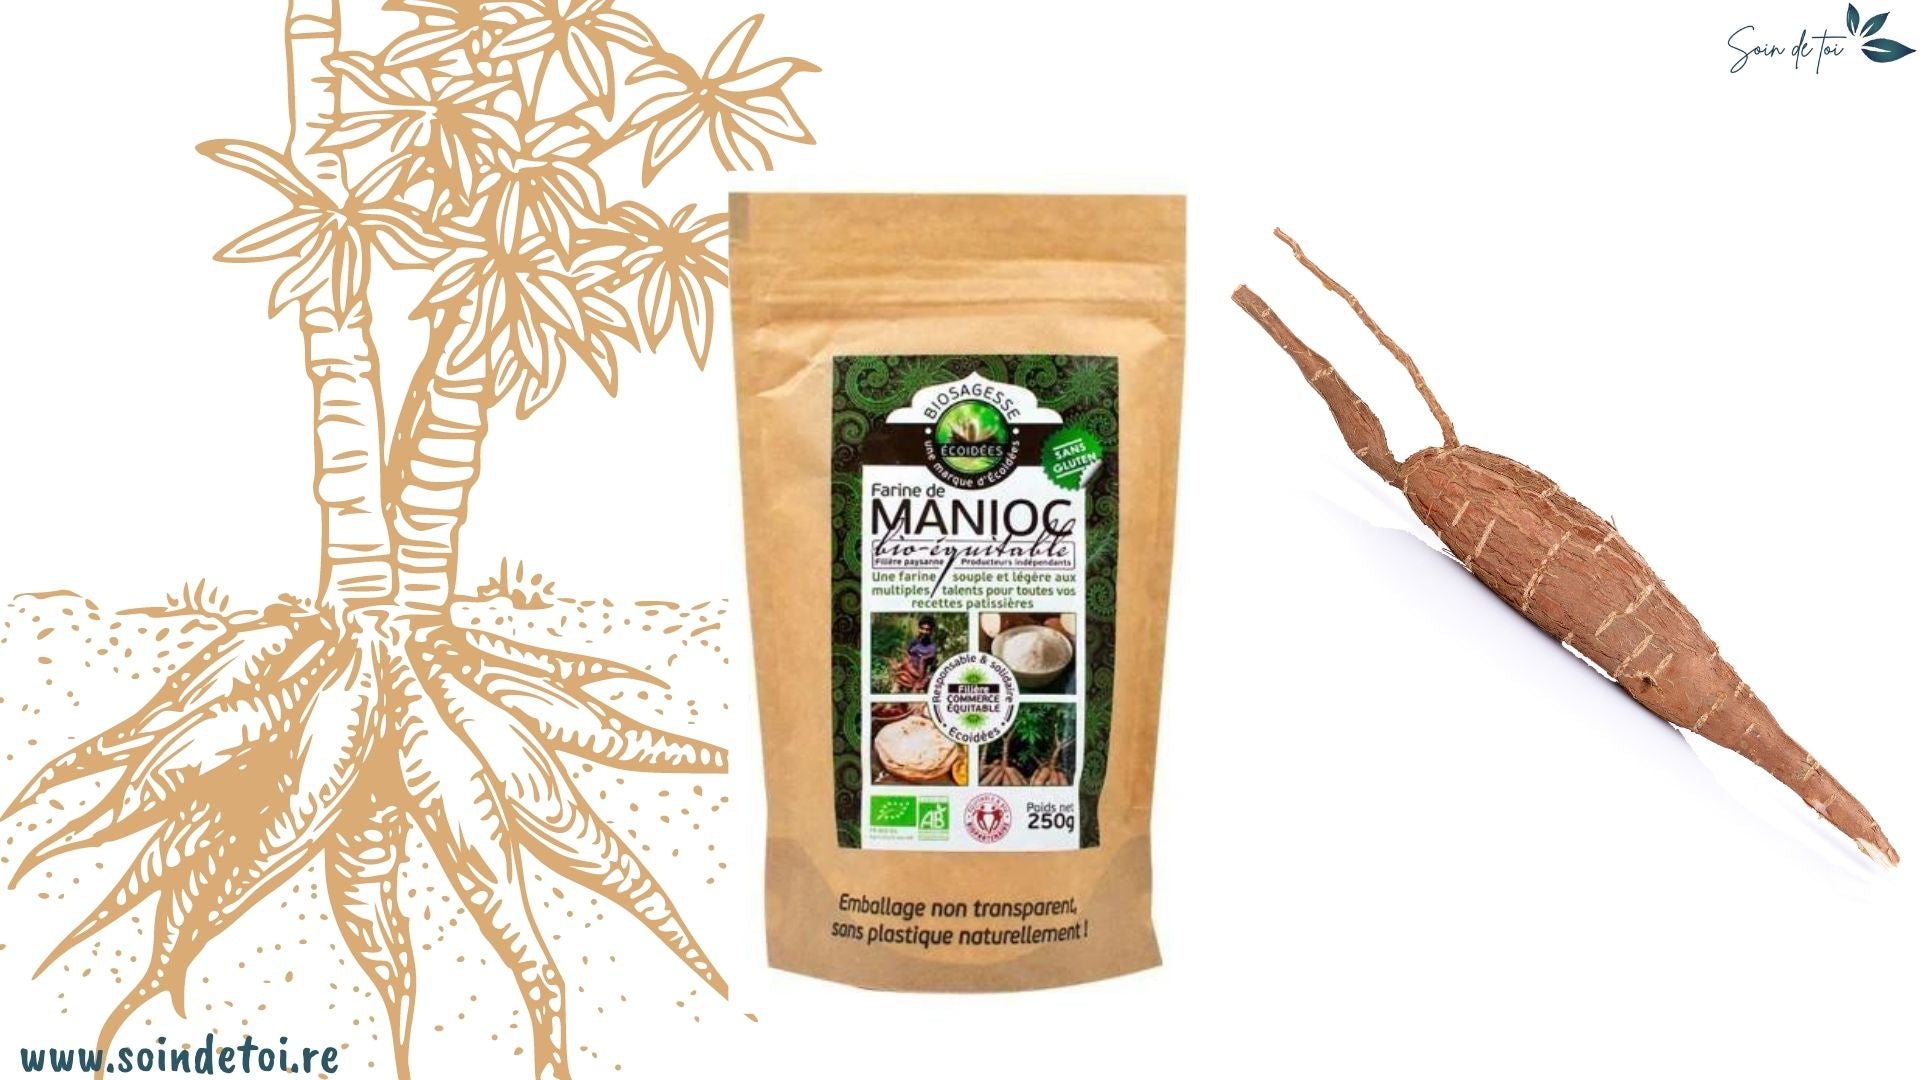 Farine de manioc : une farine souple et légère